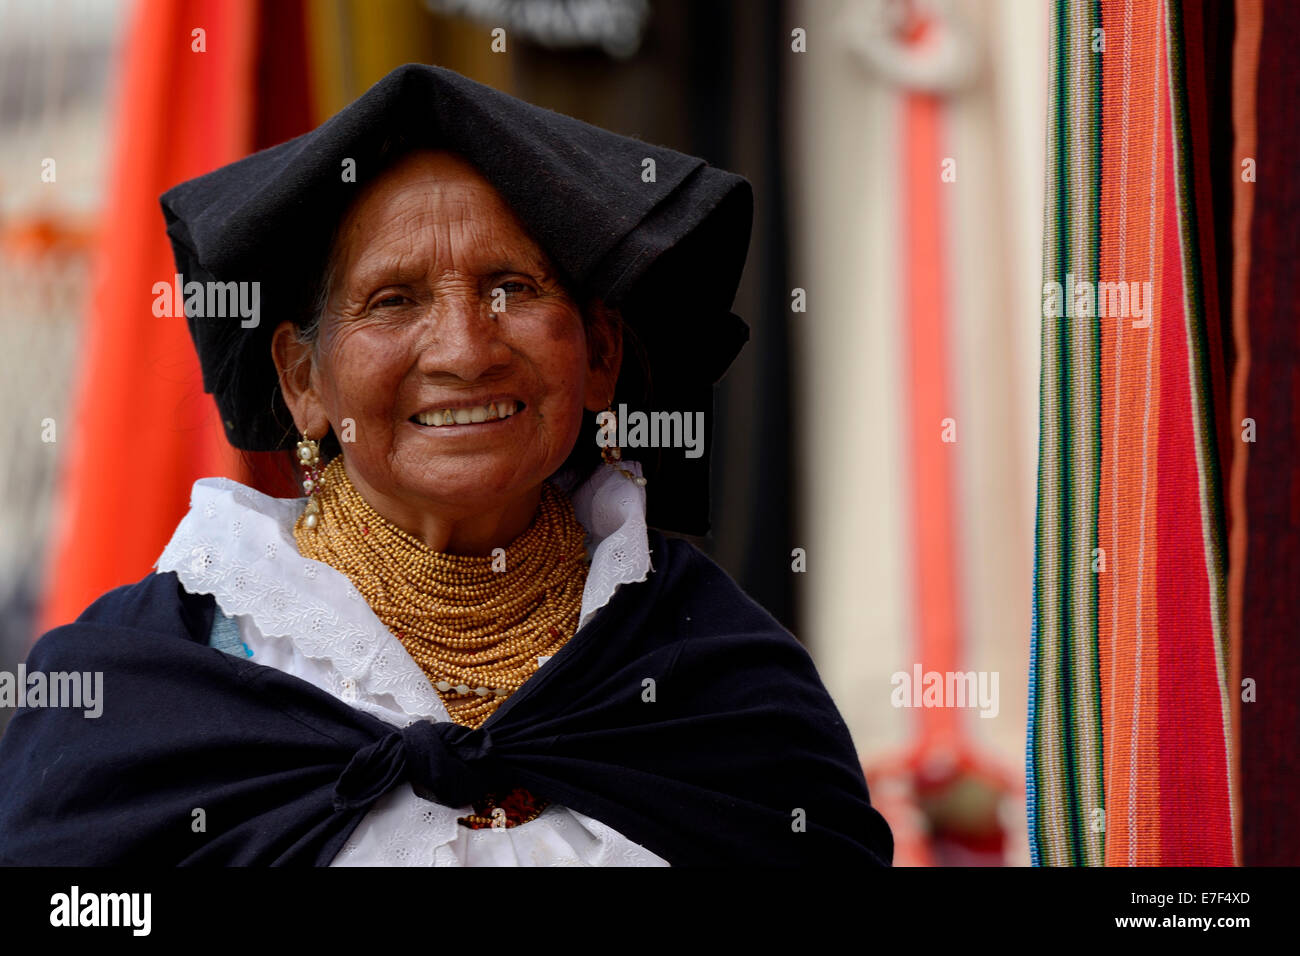 Market woman wearing a traditional Ecuadorian costume, Quito, Ecuador, South America Stock Photo